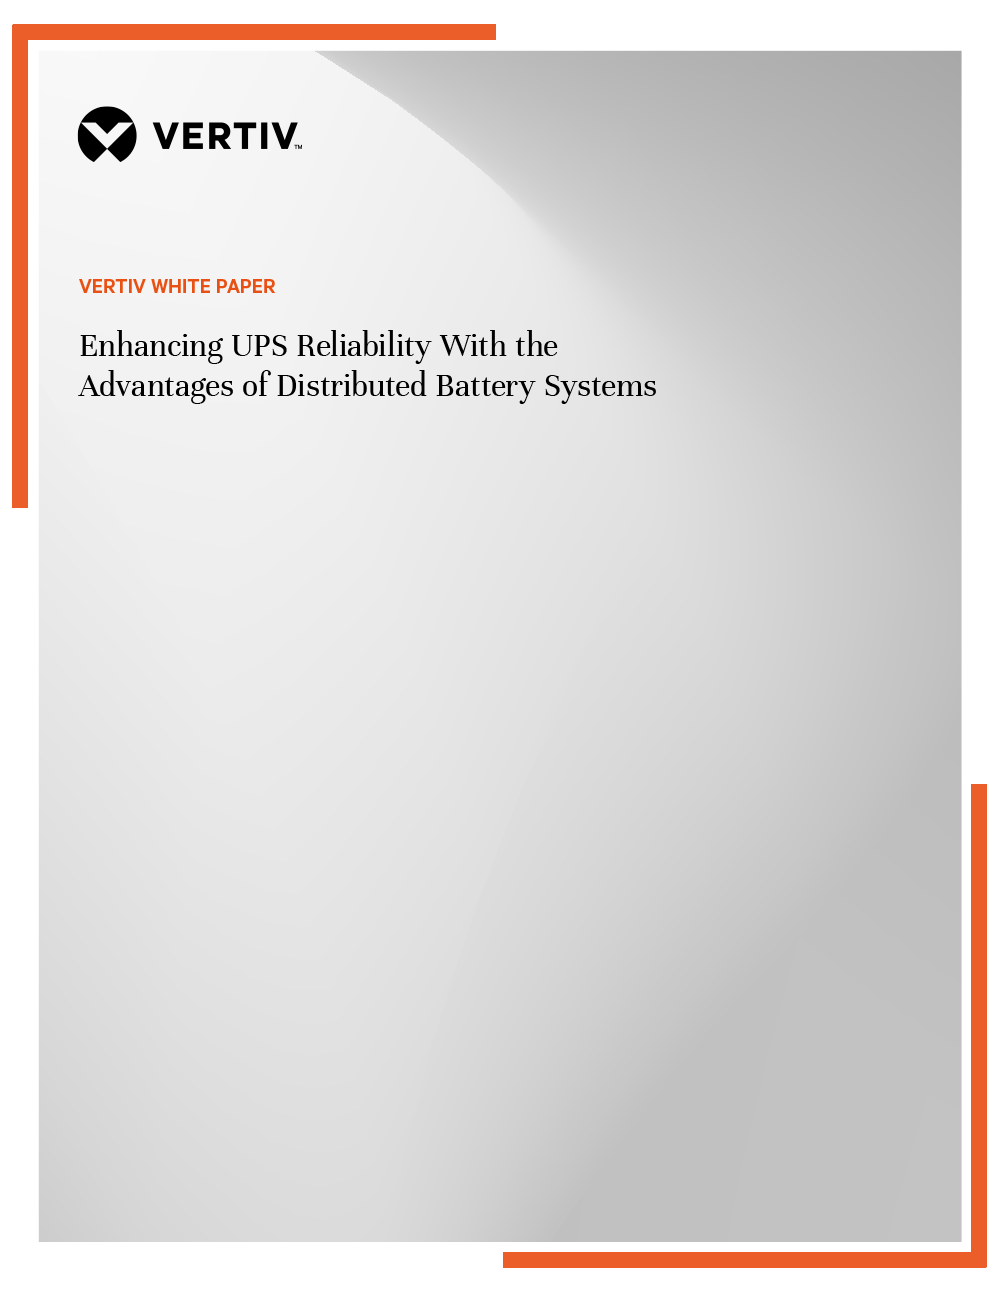 vertiv-enhancing-ups-reliability-wp-en-emea-gr-WP-Thumbnail.png